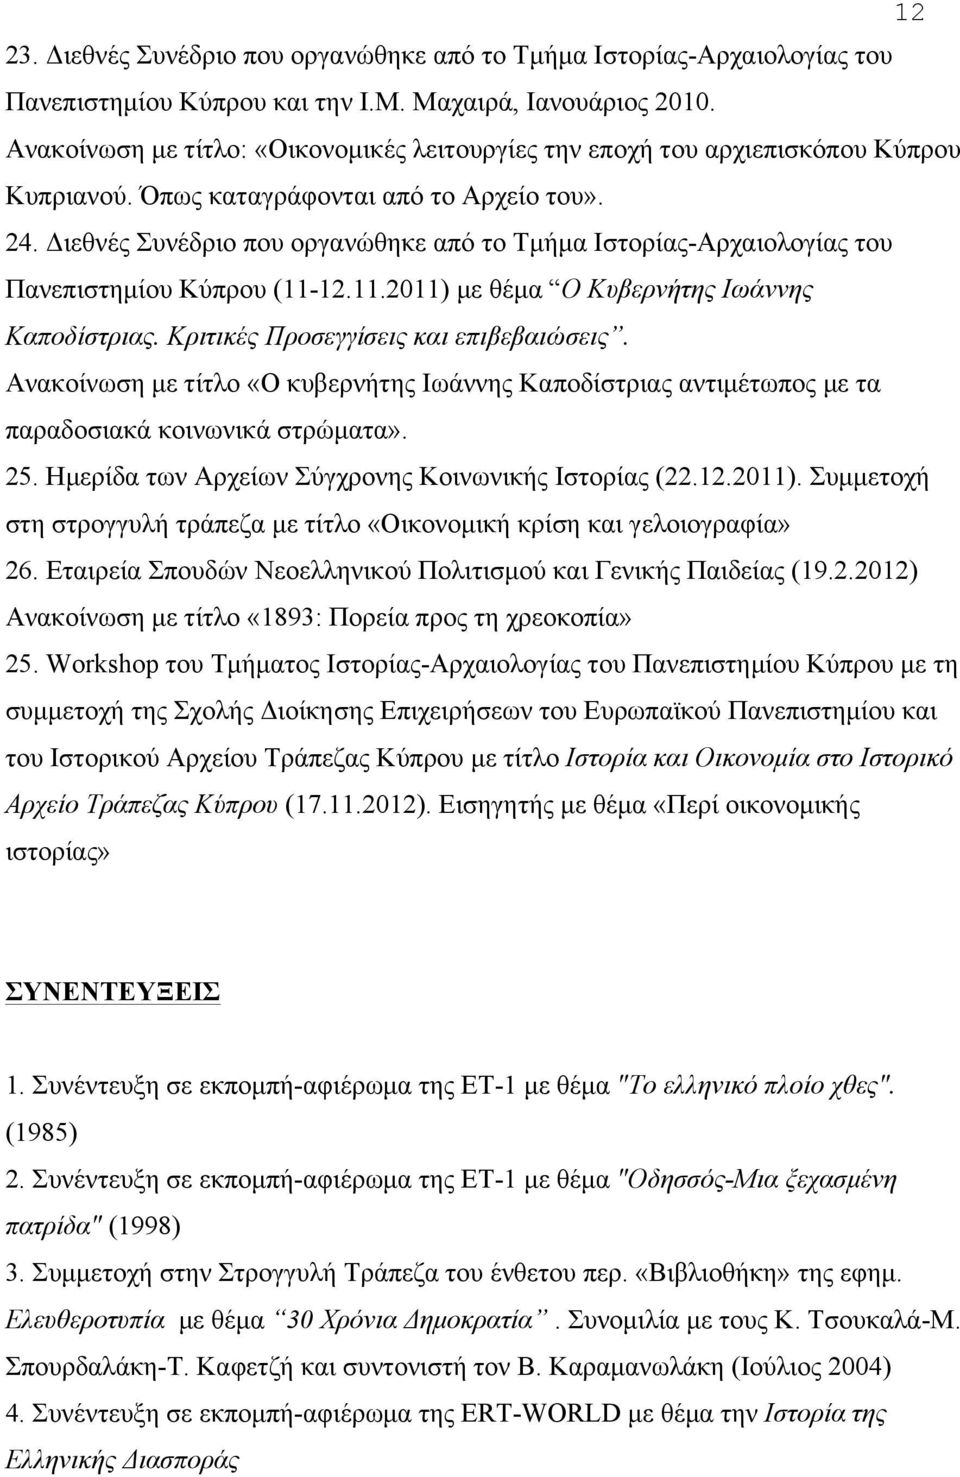 Διεθνές Συνέδριο που οργανώθηκε από το Τµήµα Ιστορίας-Αρχαιολογίας του Πανεπιστηµίου Κύπρου (11-12.11.2011) µε θέµα Ο Κυβερνήτης Ιωάννης Καποδίστριας. Κριτικές Προσεγγίσεις και επιβεβαιώσεις.